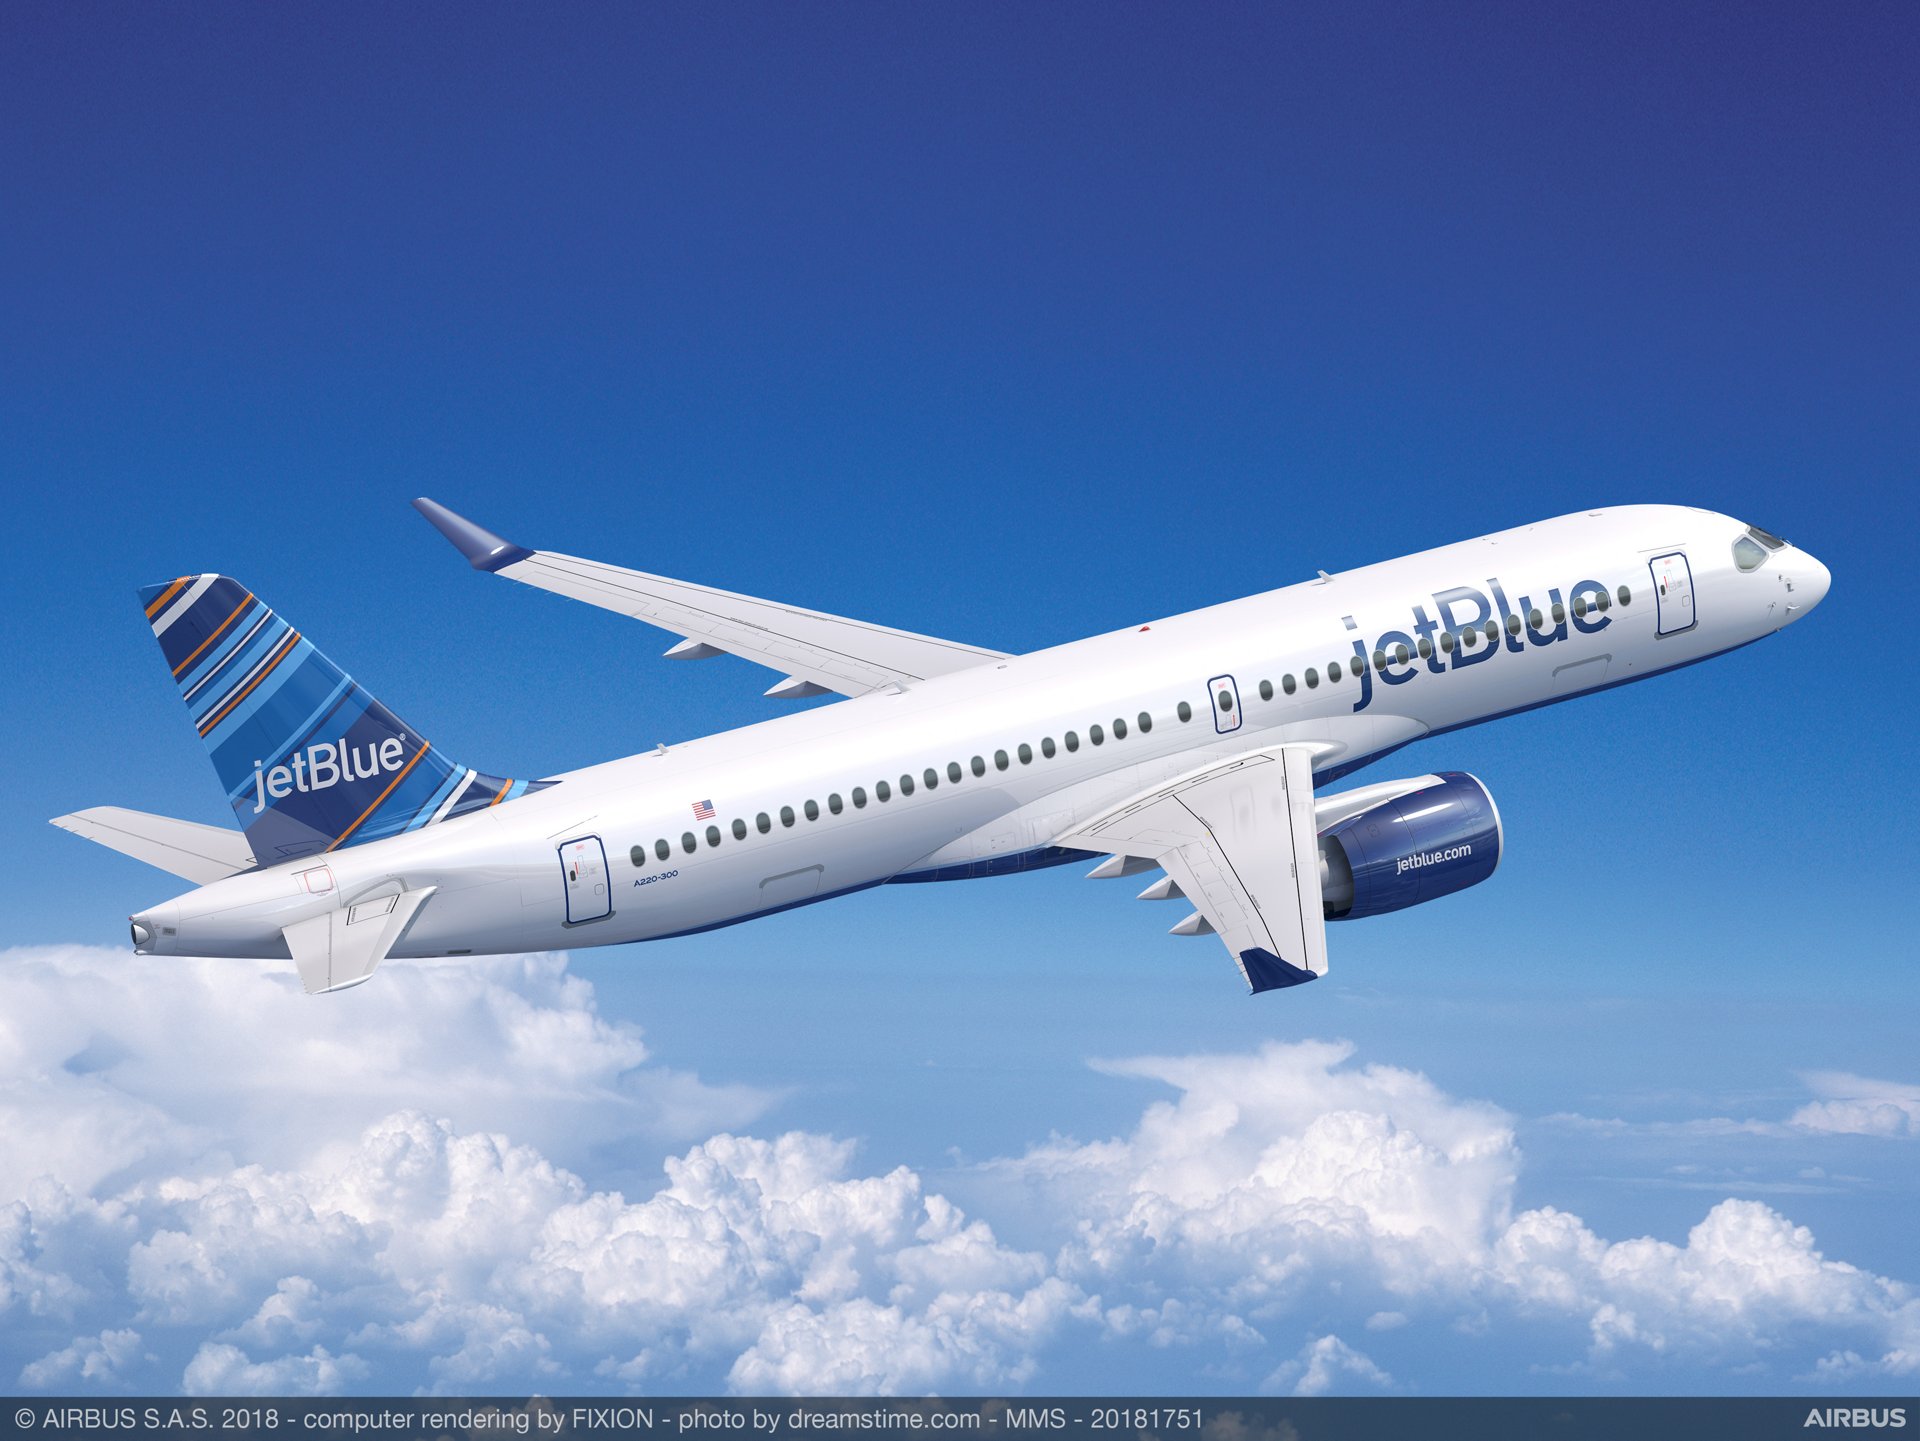 Jetblue Flight Schedule Release 2022 Jetblue Extends London Heathrow Schedule Through October 2022 – Ala Noticias